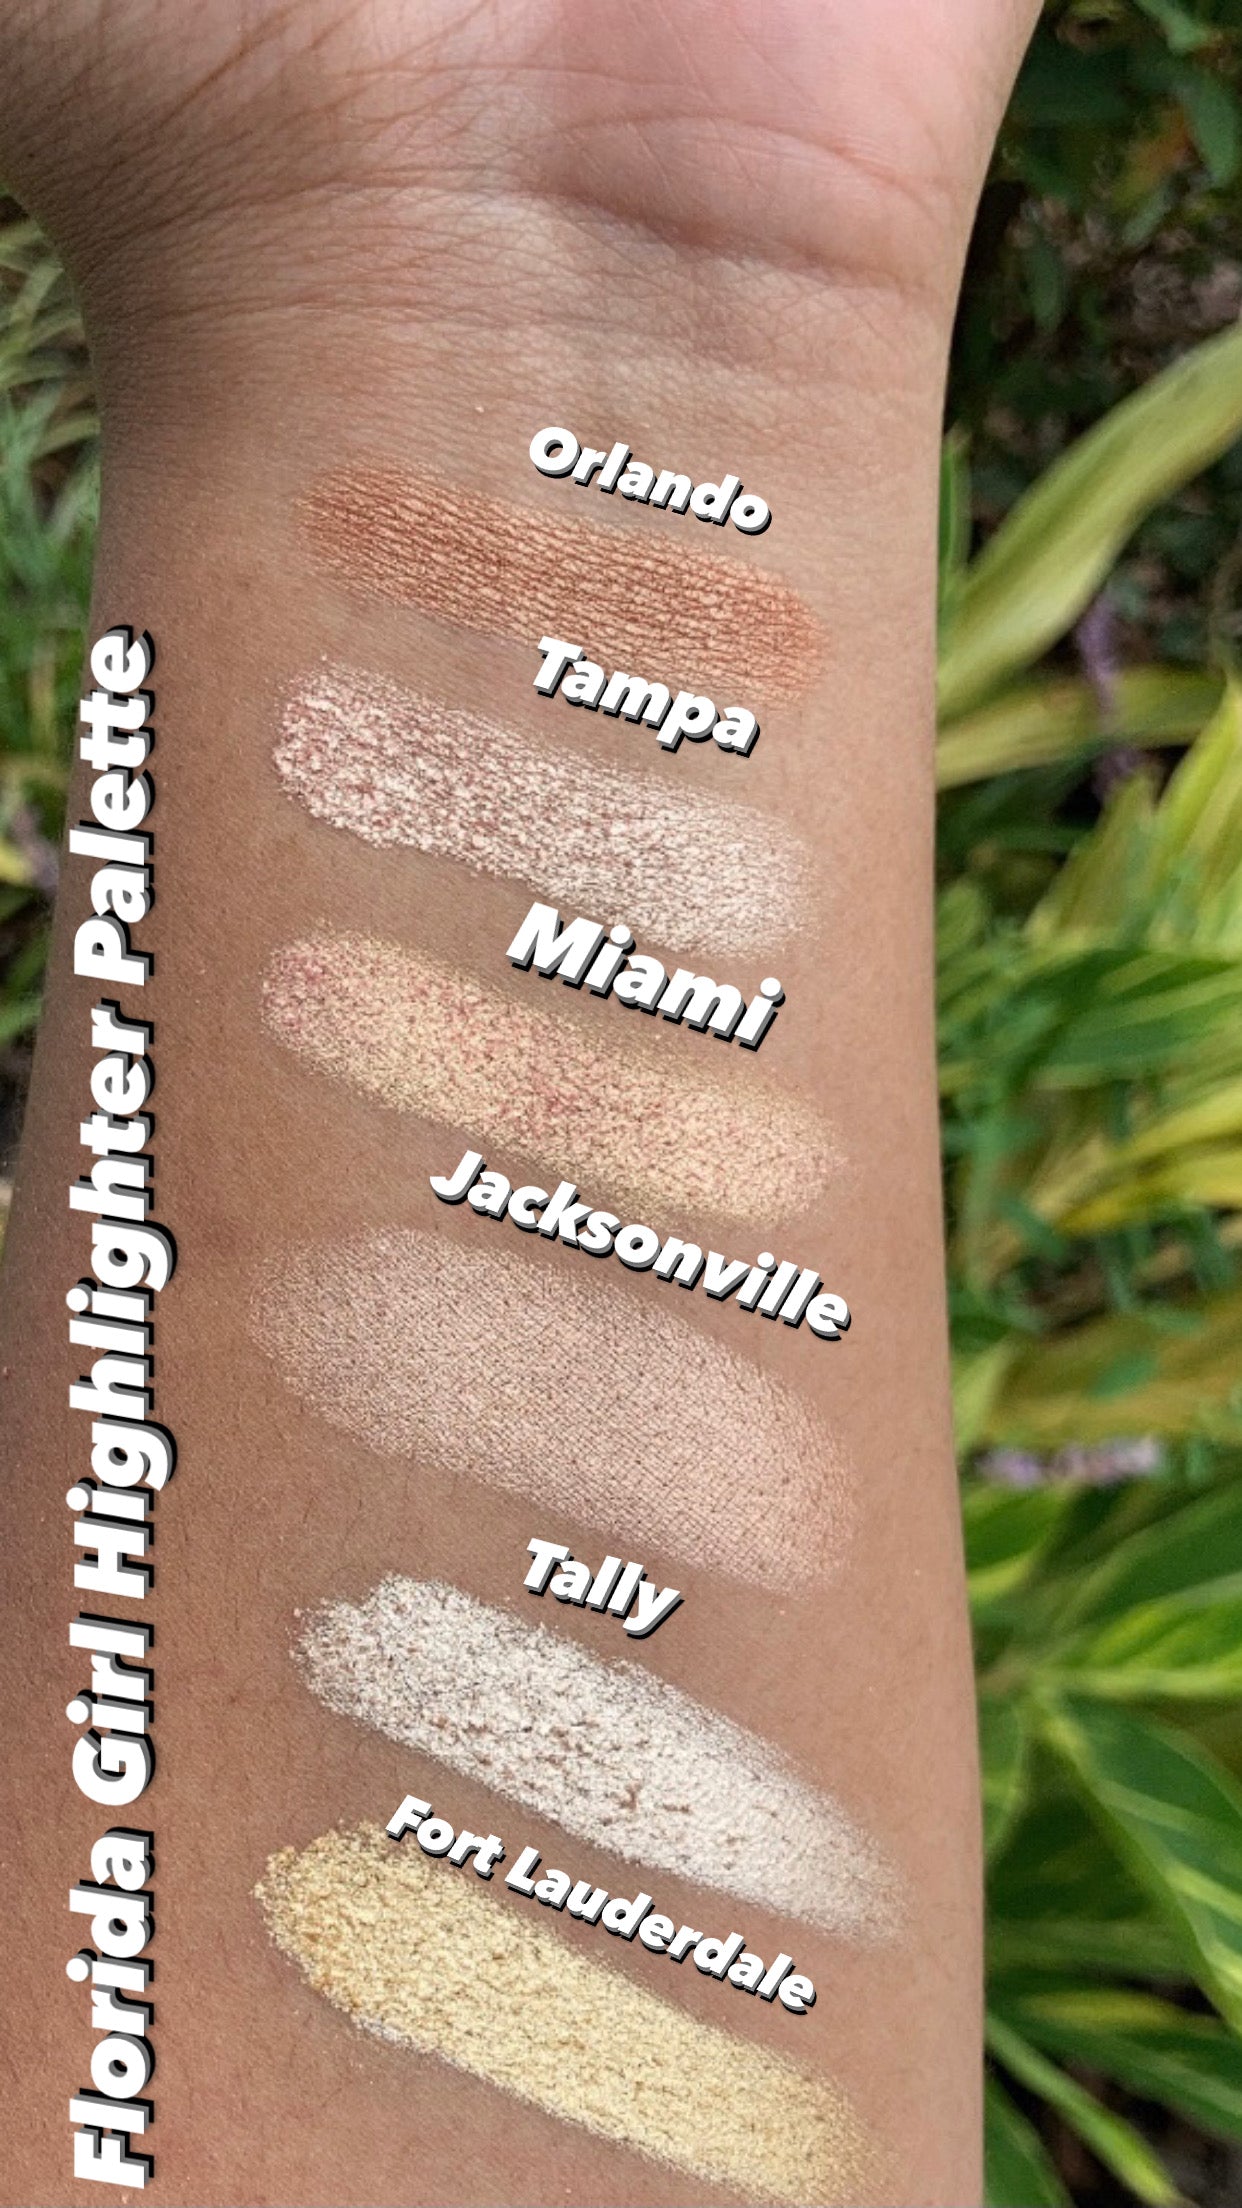 Florida Girl Highlighter Palette